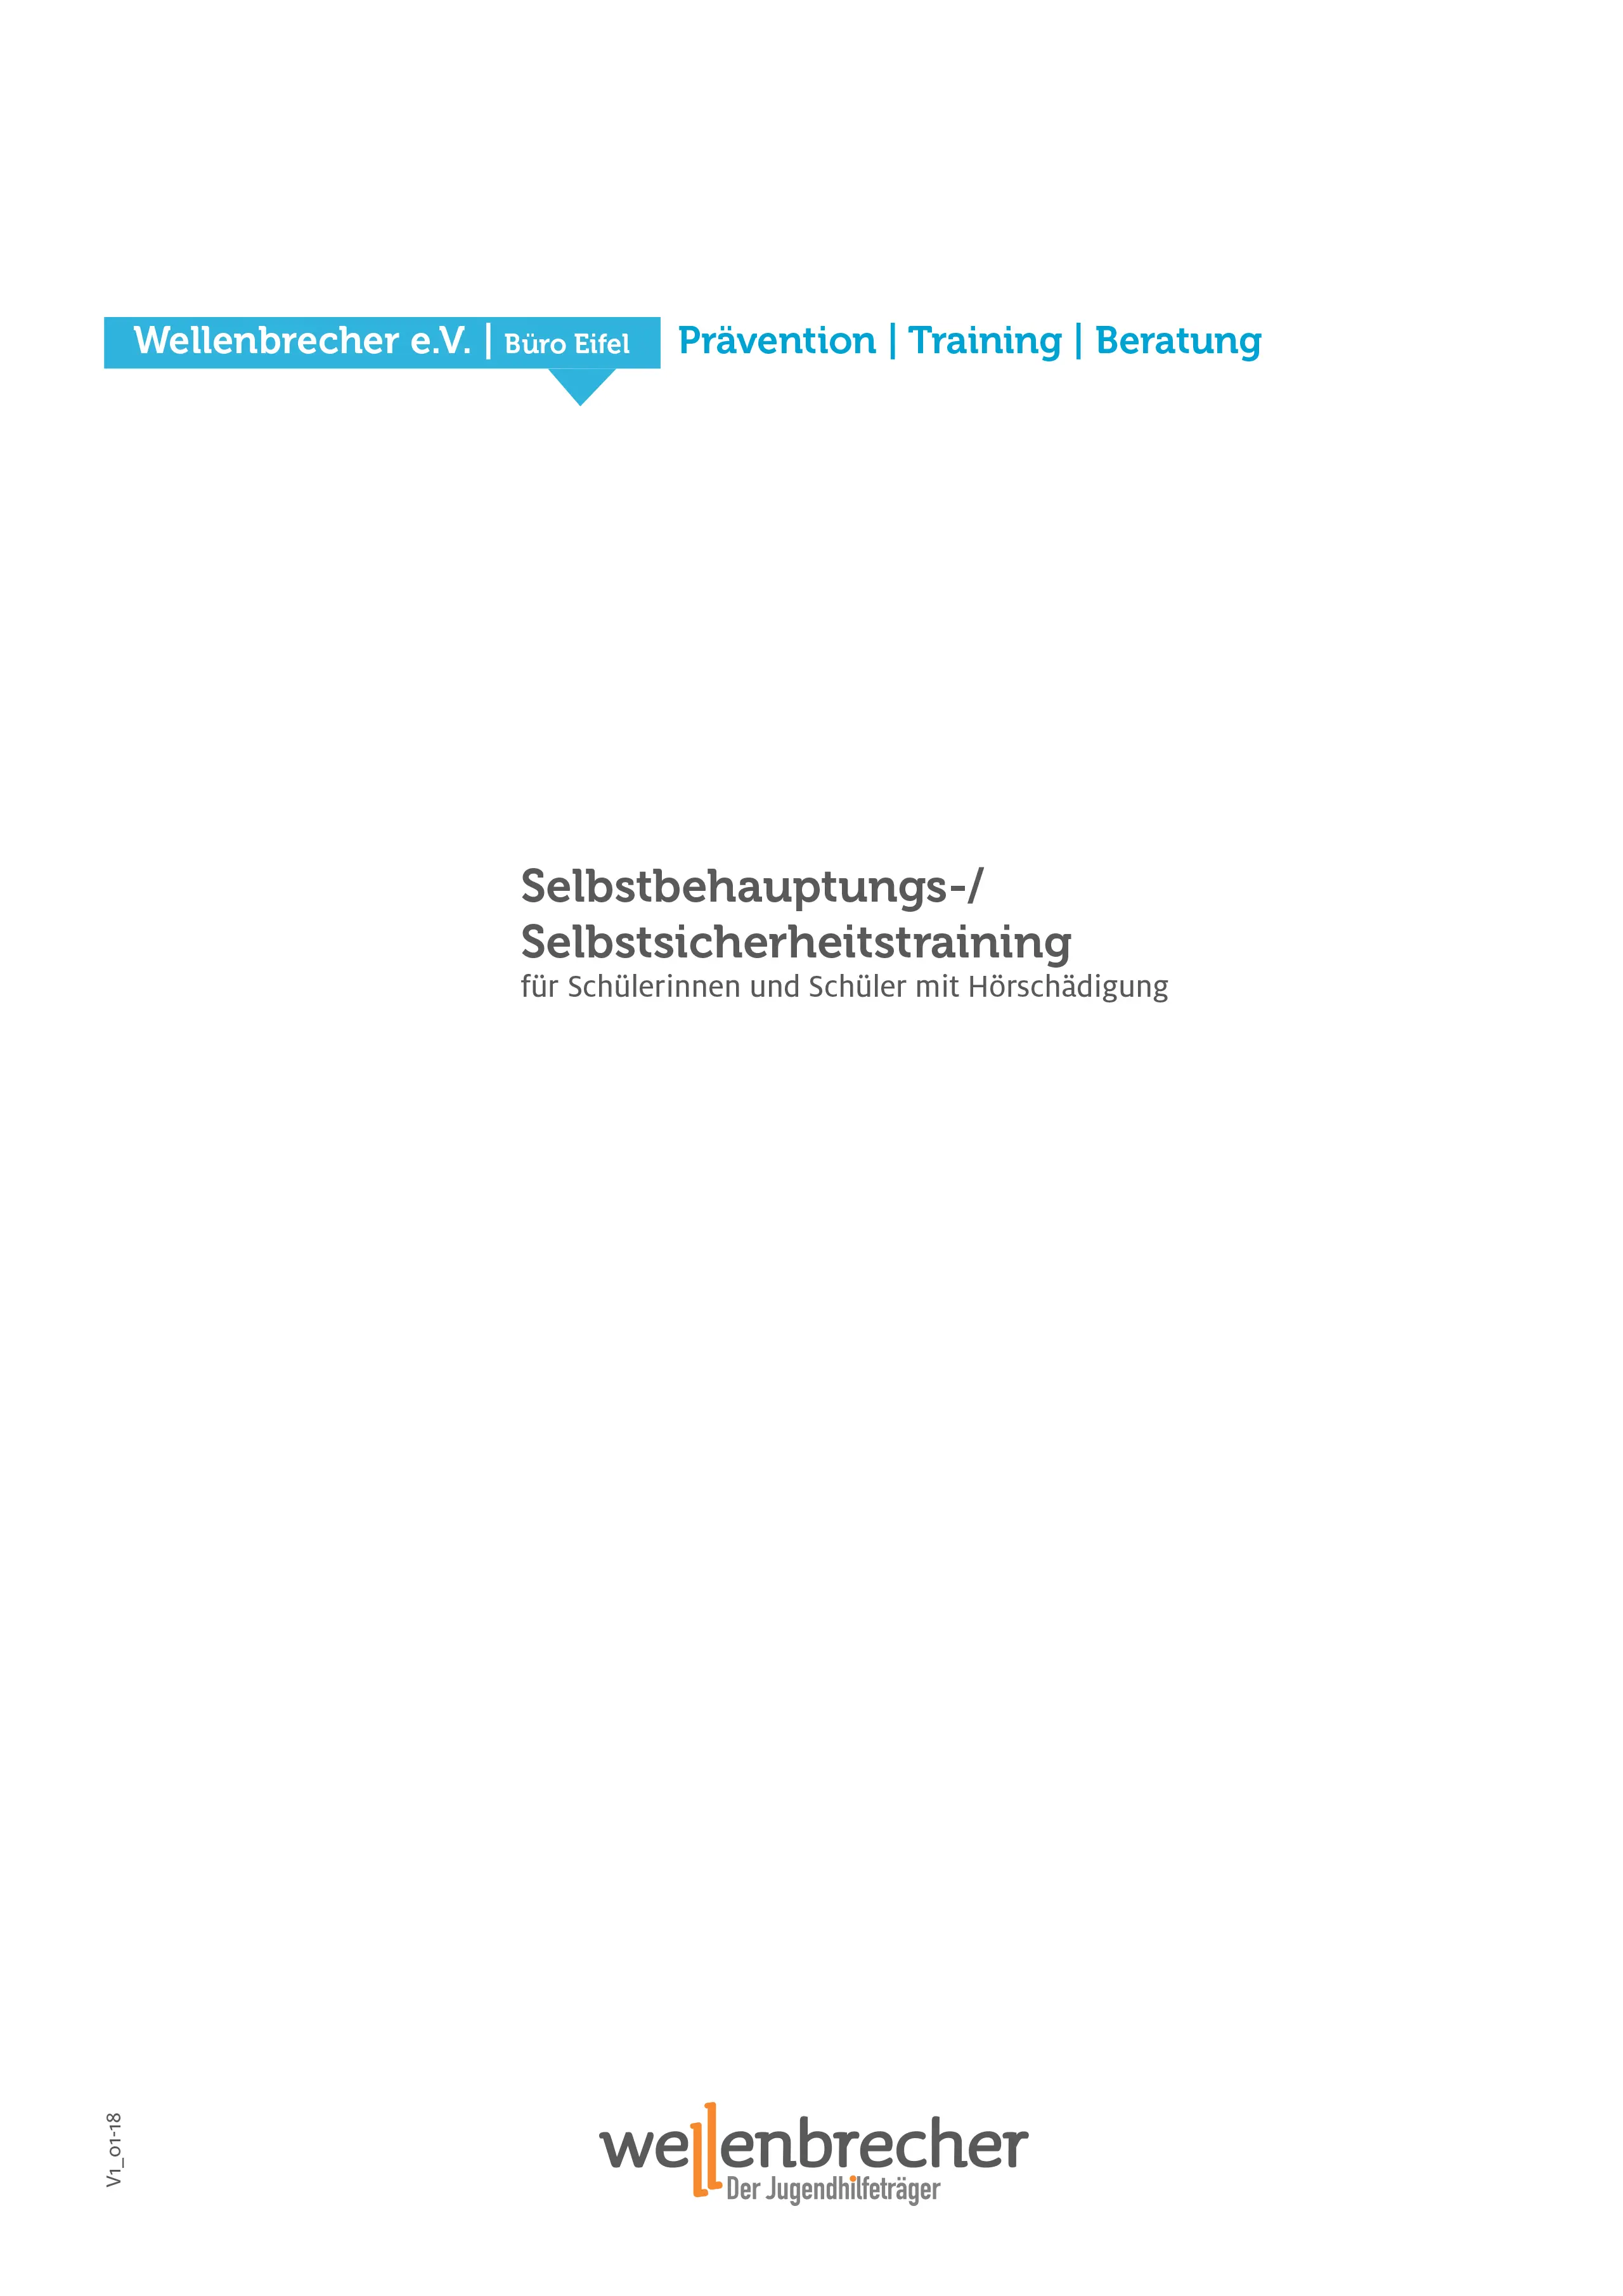 Titelseite Fortbildung Selbstbehauptungs-/Selbstsicherheitstraining für Schülerinnen und Schüler mit Hörschädigung